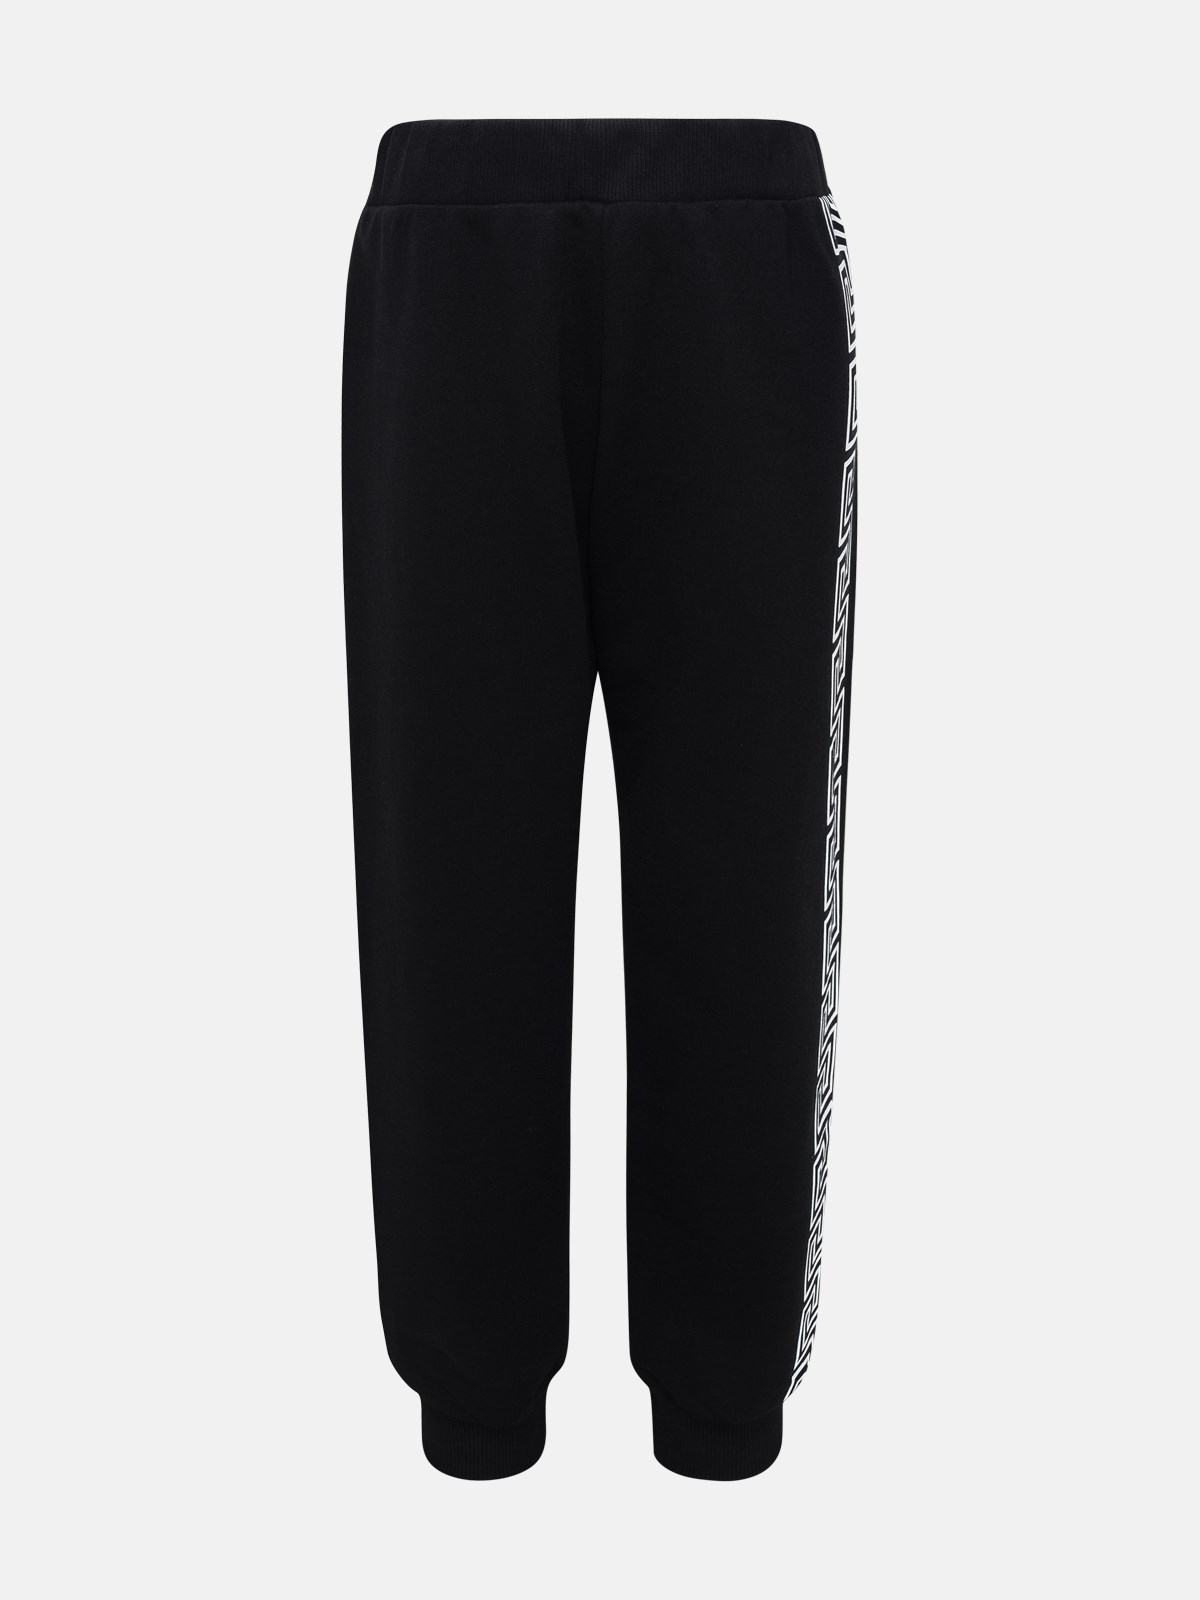 Shop Versace Black Cotton Pants